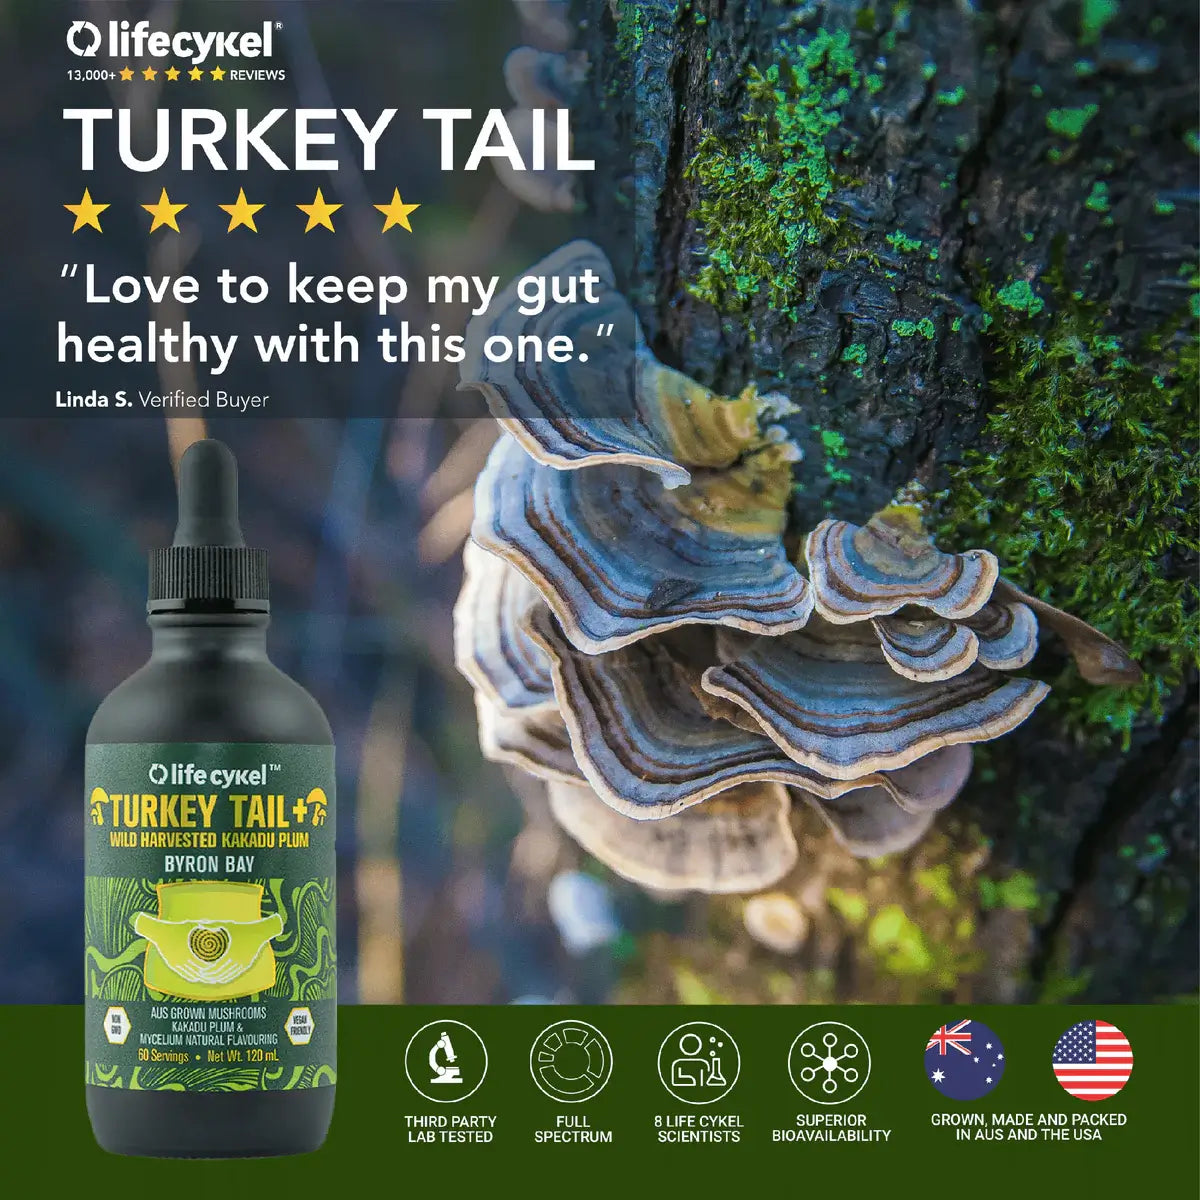 Life Cykel Turkey Tail Mushroom &amp; Kakadu Plum Trinity Extract - The Cannabis Company